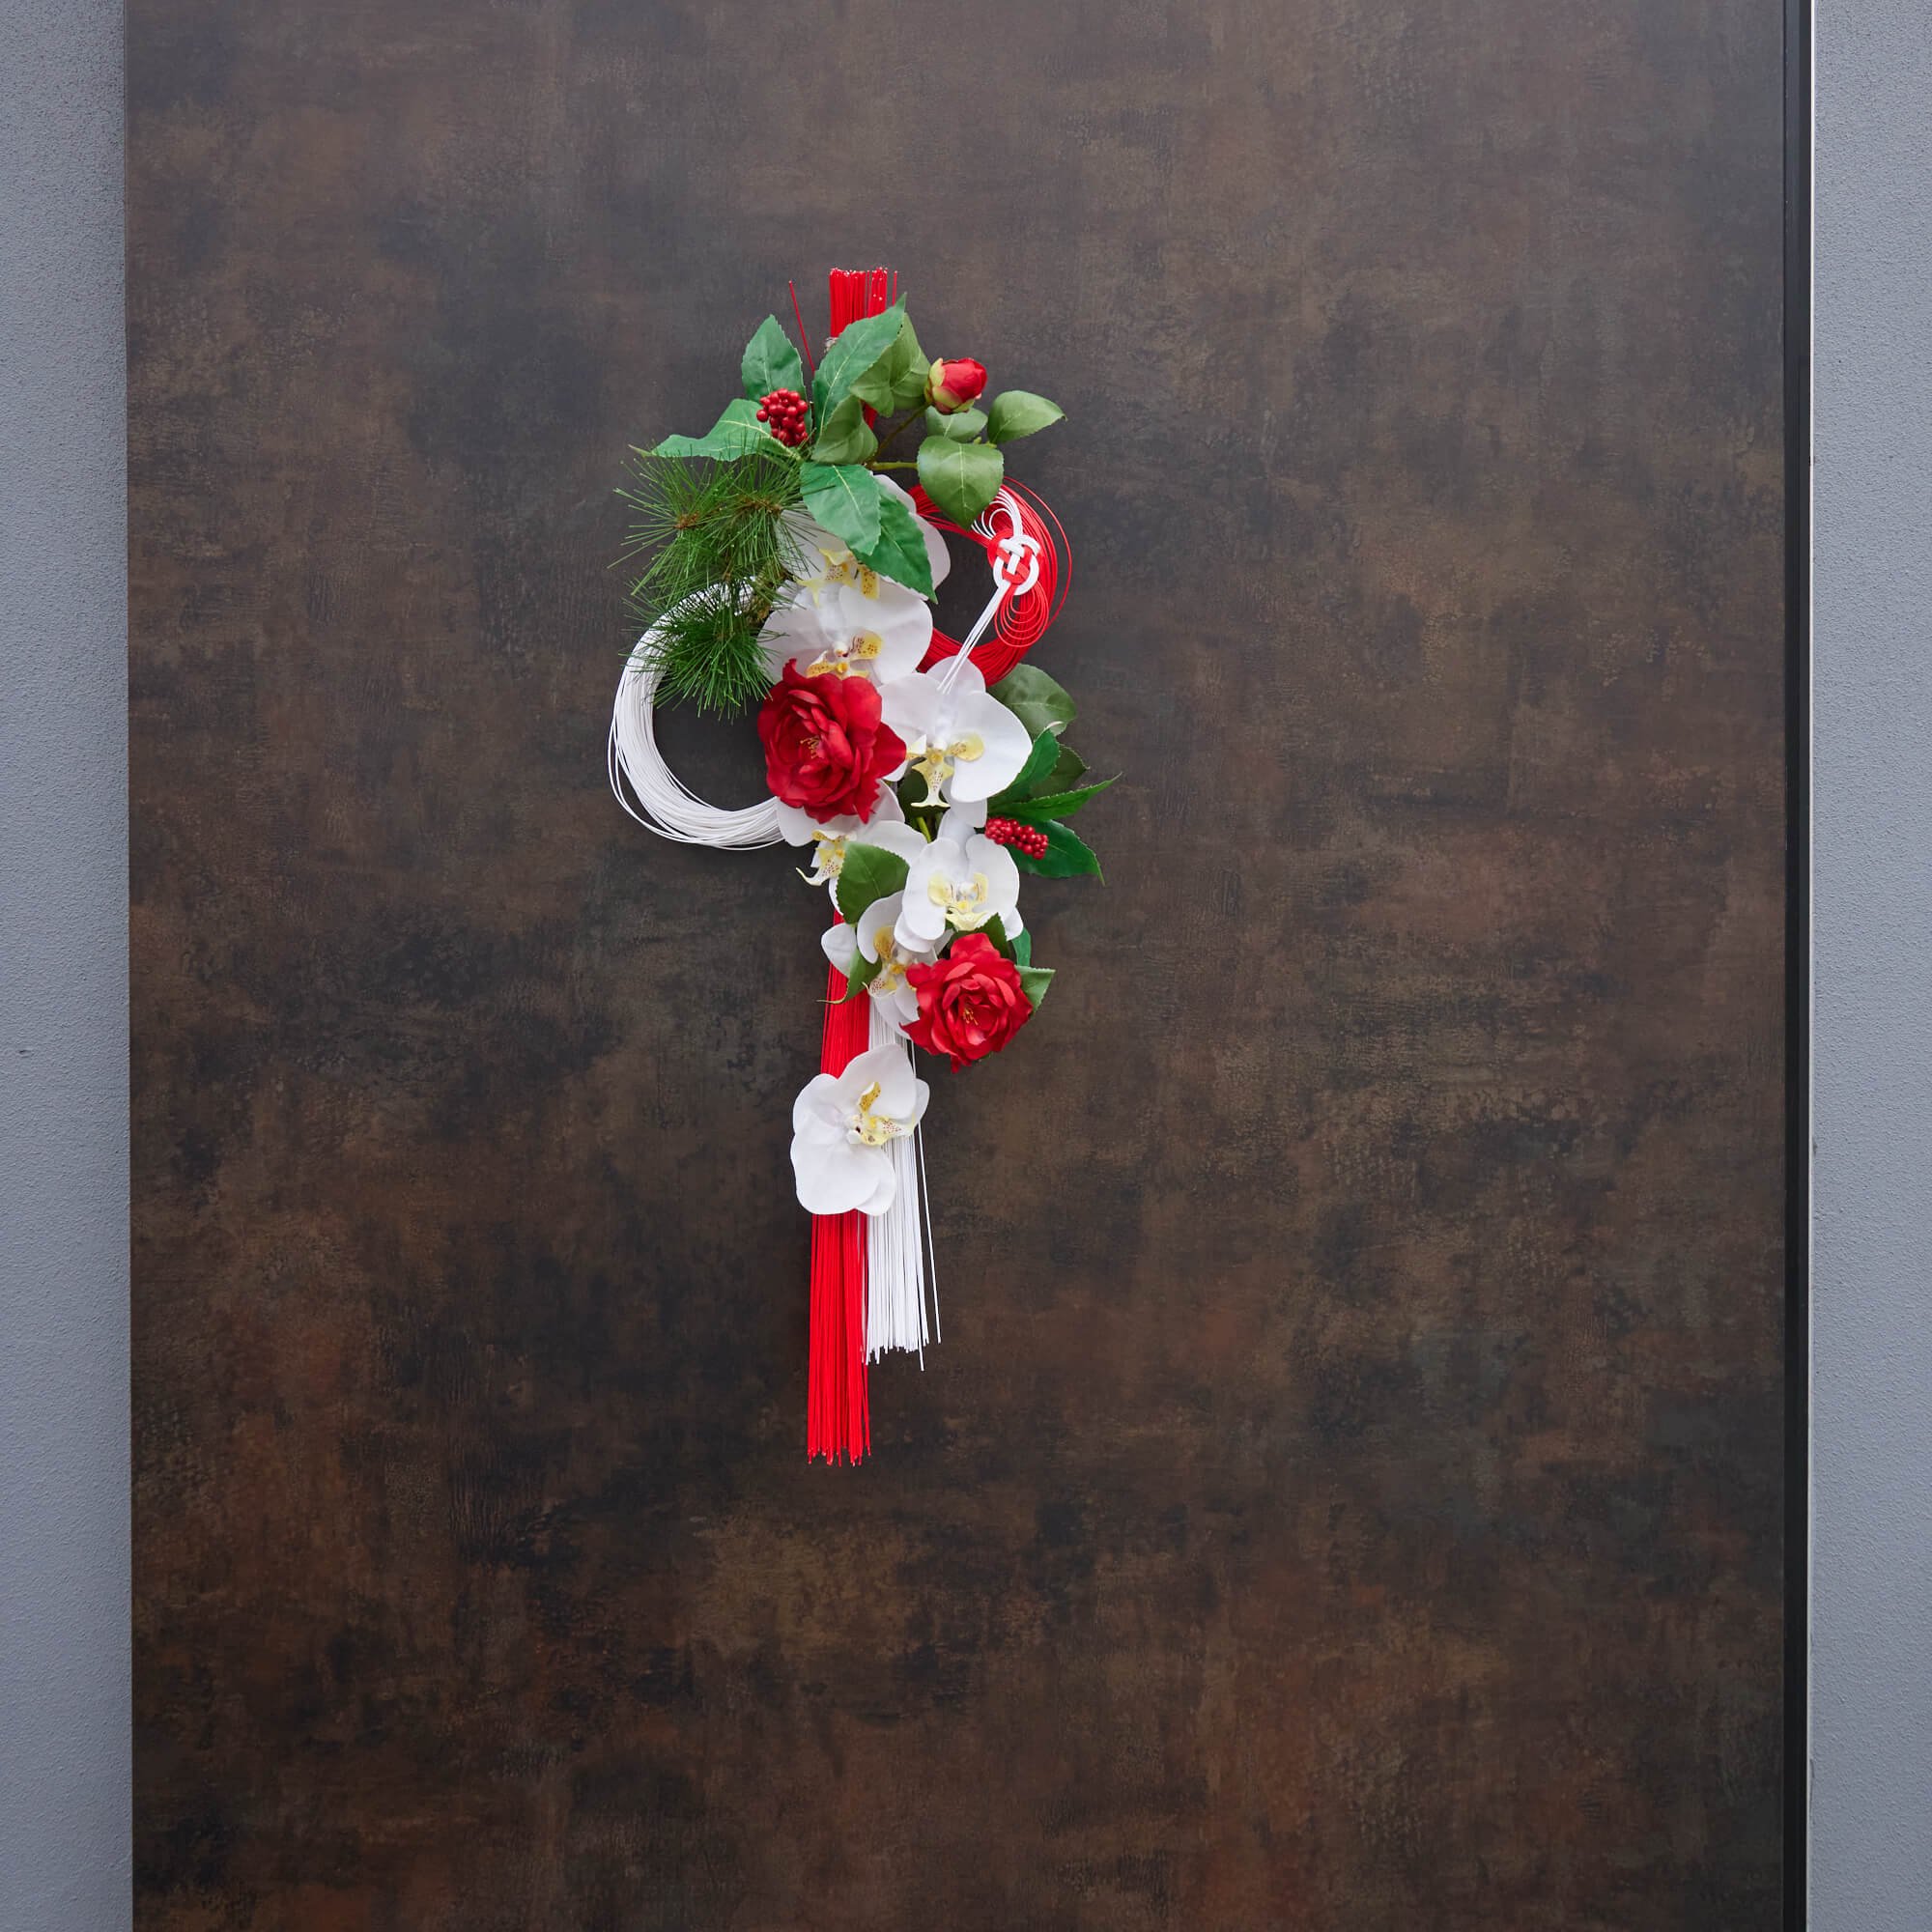 コチョウラン 椿 お正月飾り フラワーアレンジメント 造花 アーティフィシャルフラワー アートフラワー